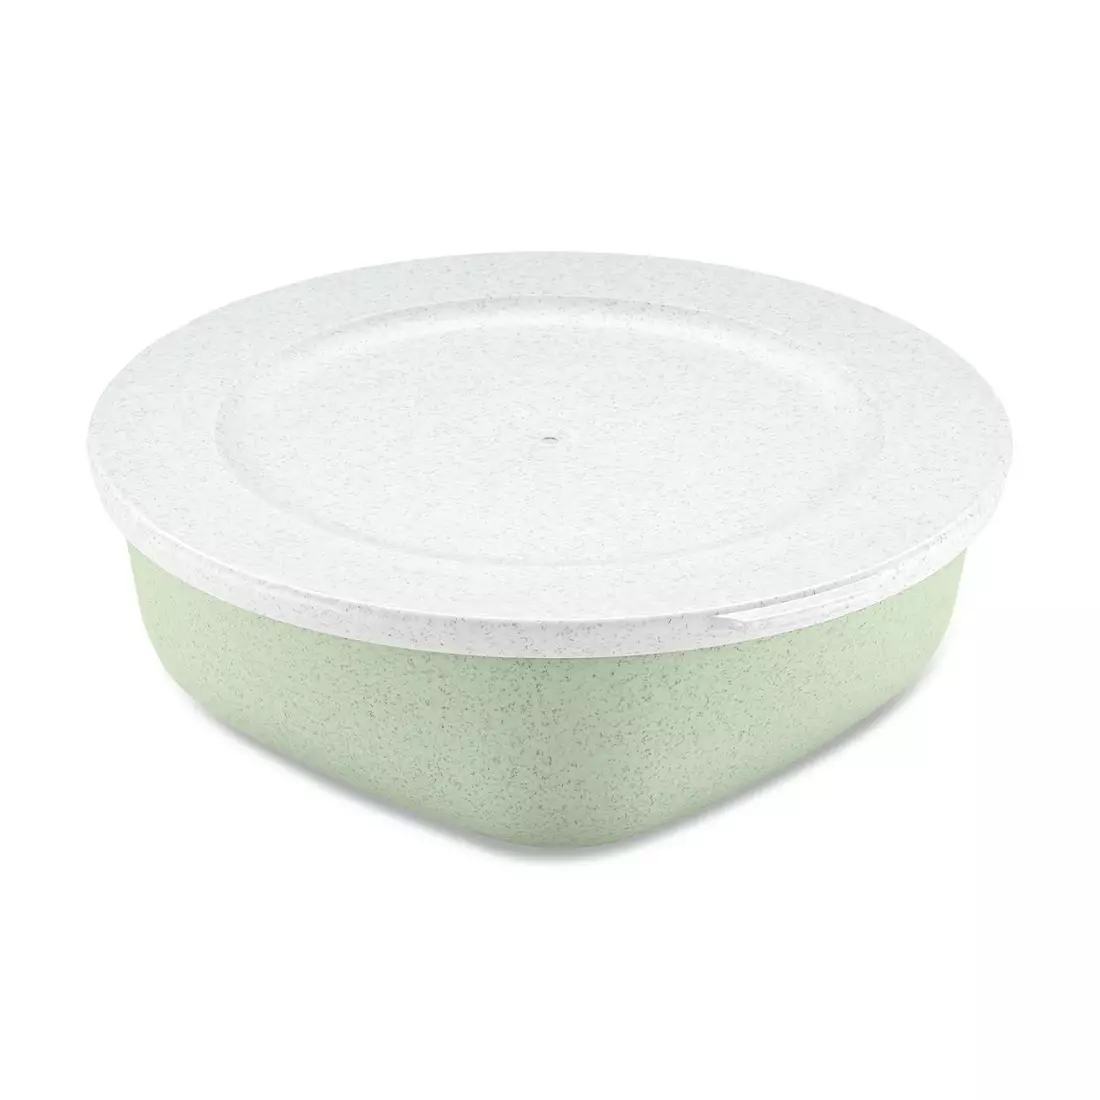 Koziol CONNECT BOX bowl 1,3L, organic green/white